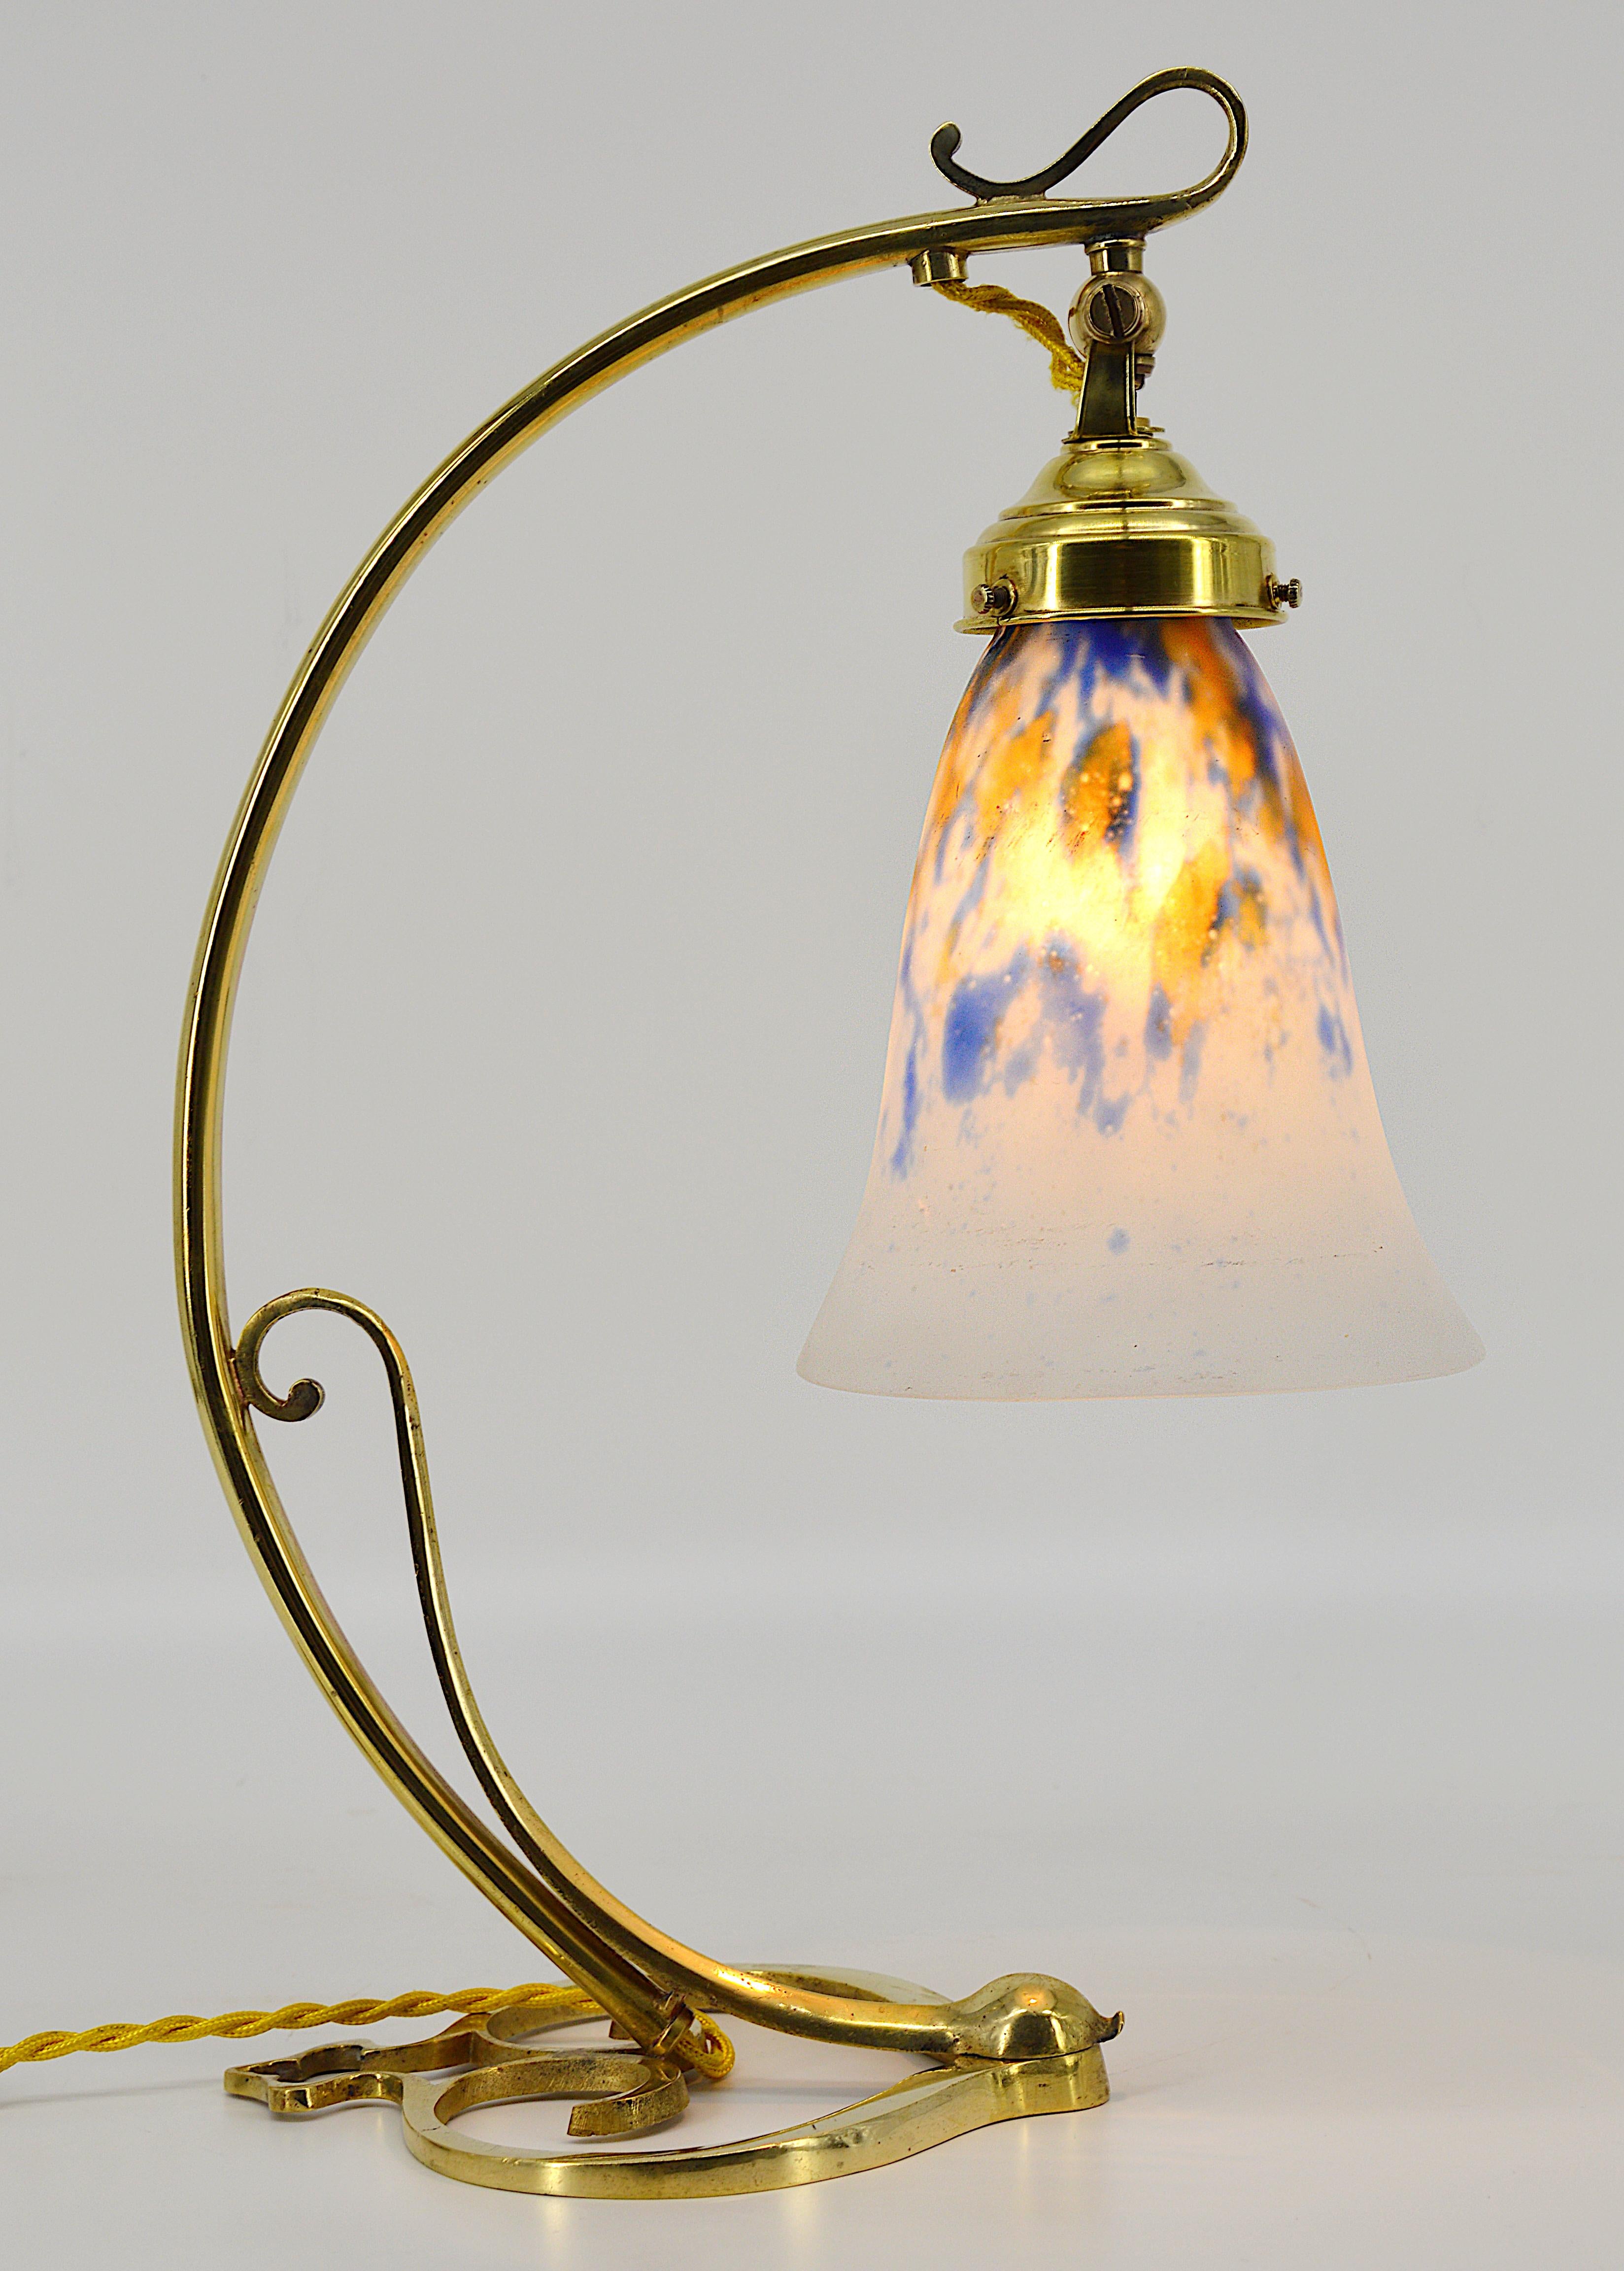 Lampe de table Art déco / Nouveau, Nancy, France, vers 1920. Double abat-jour en verre soufflé de Daum suspendu à son luminaire en bronze massif. Dimensions : Hauteur 38,5 cm (15,2